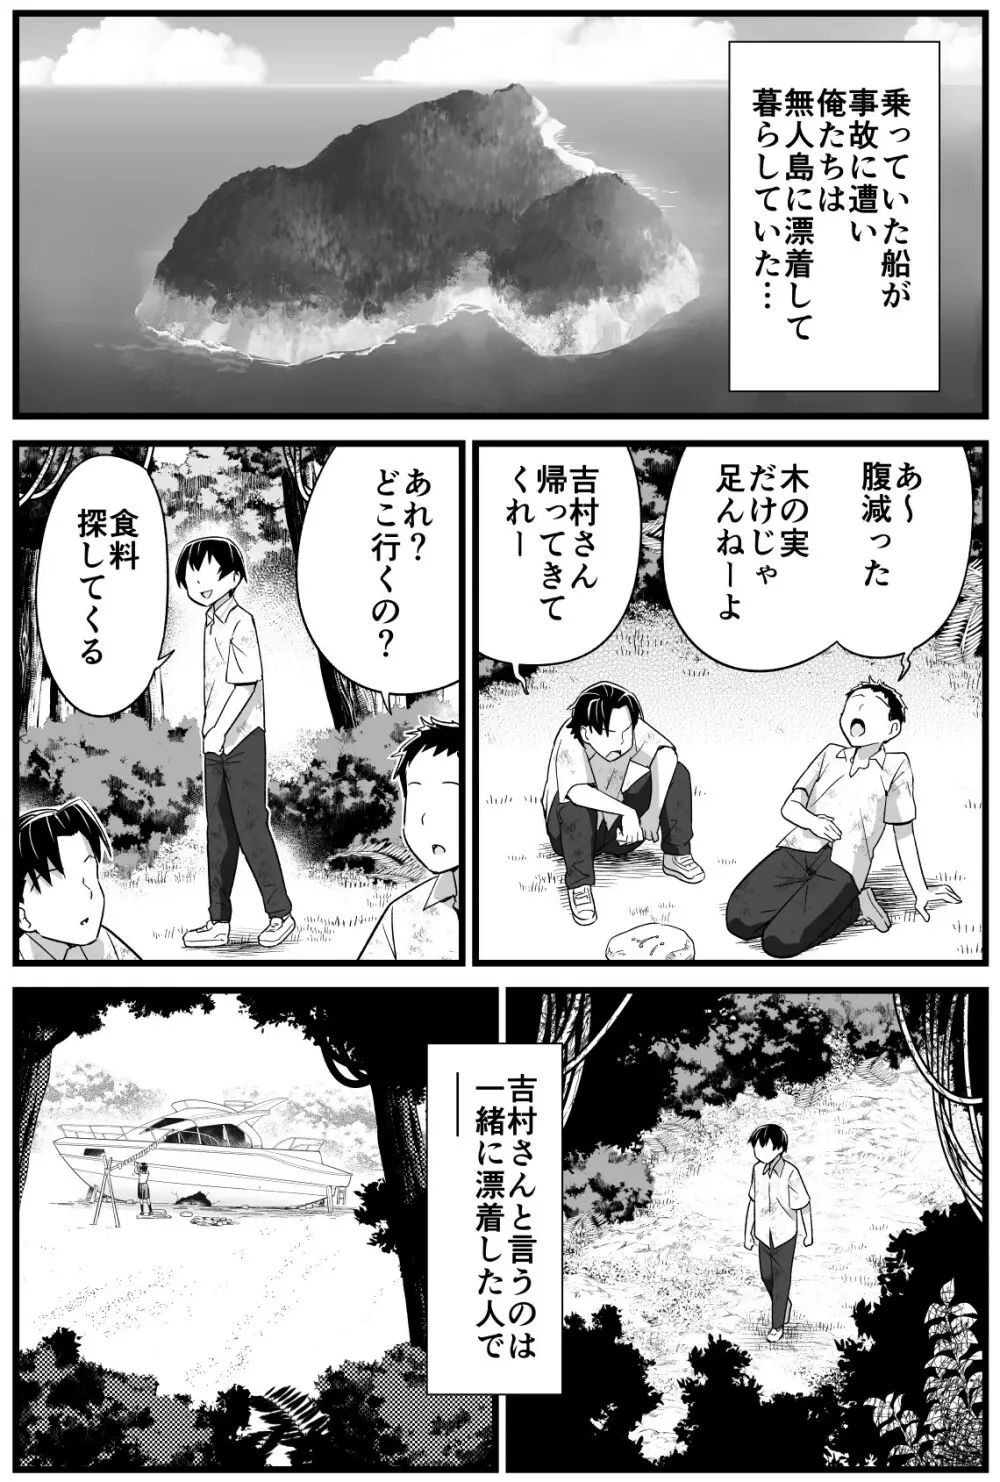 無人島JK!ちょろいよ吉村さん!volume.2 2ページ